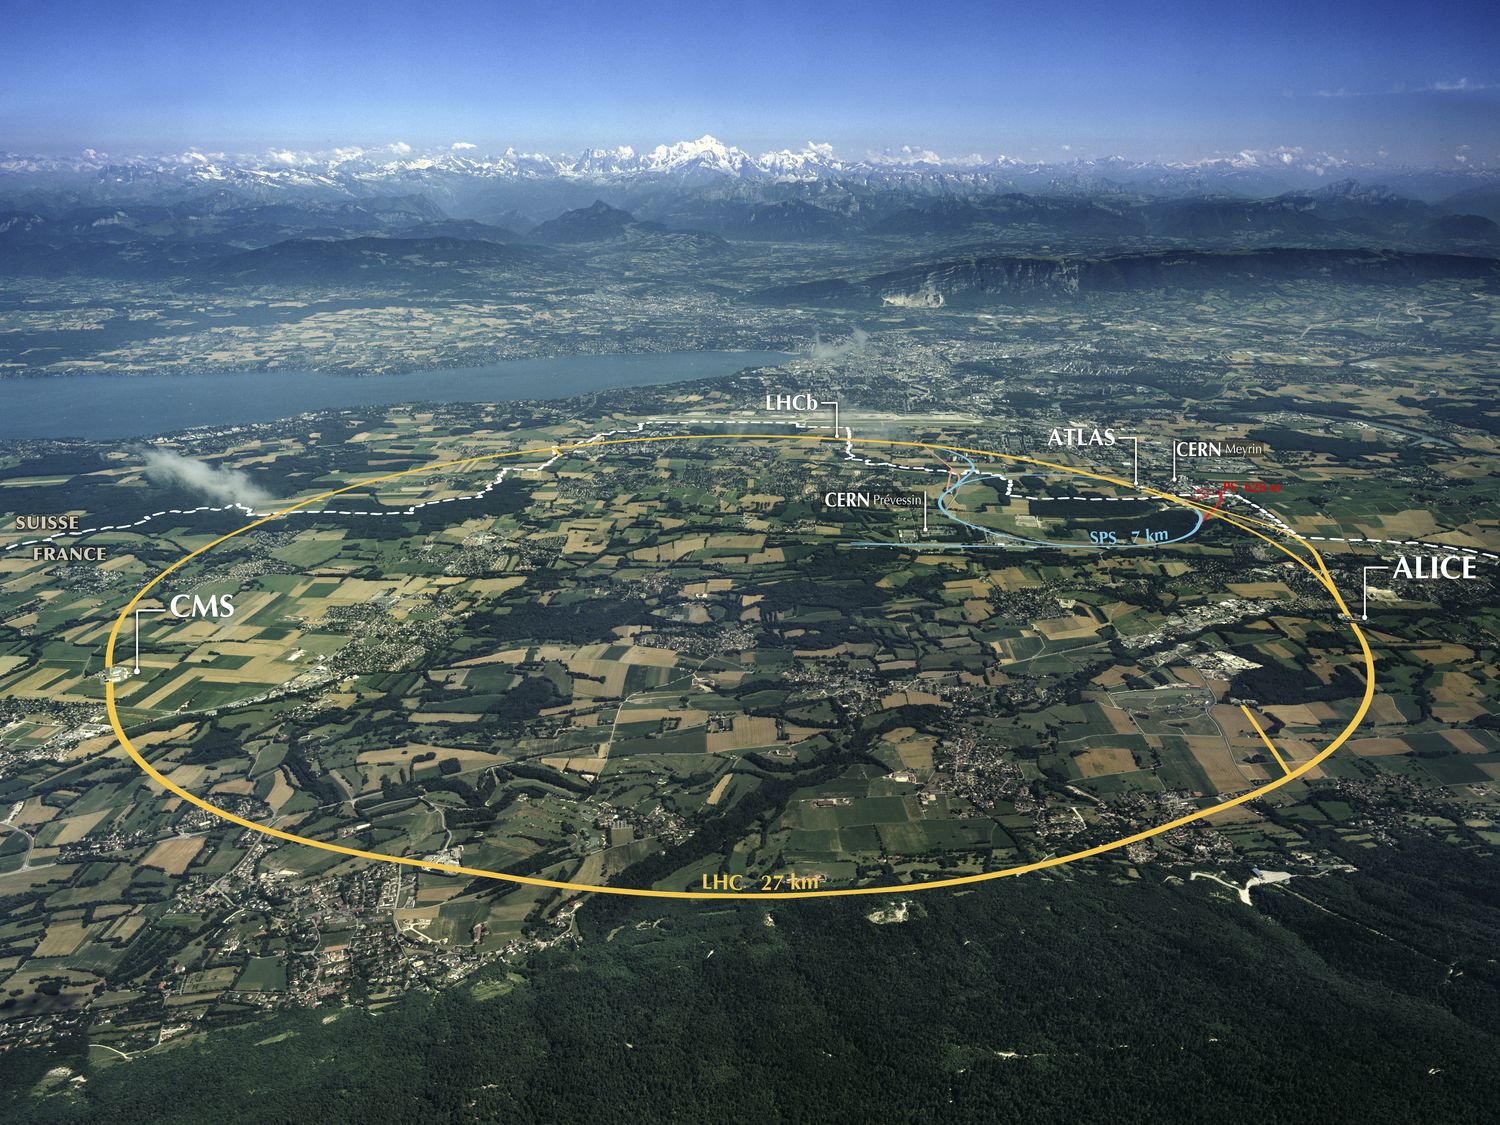 CERN beginnt ein großes Update zu extrahieren mehr Daten aus Kollisionen von Atomen